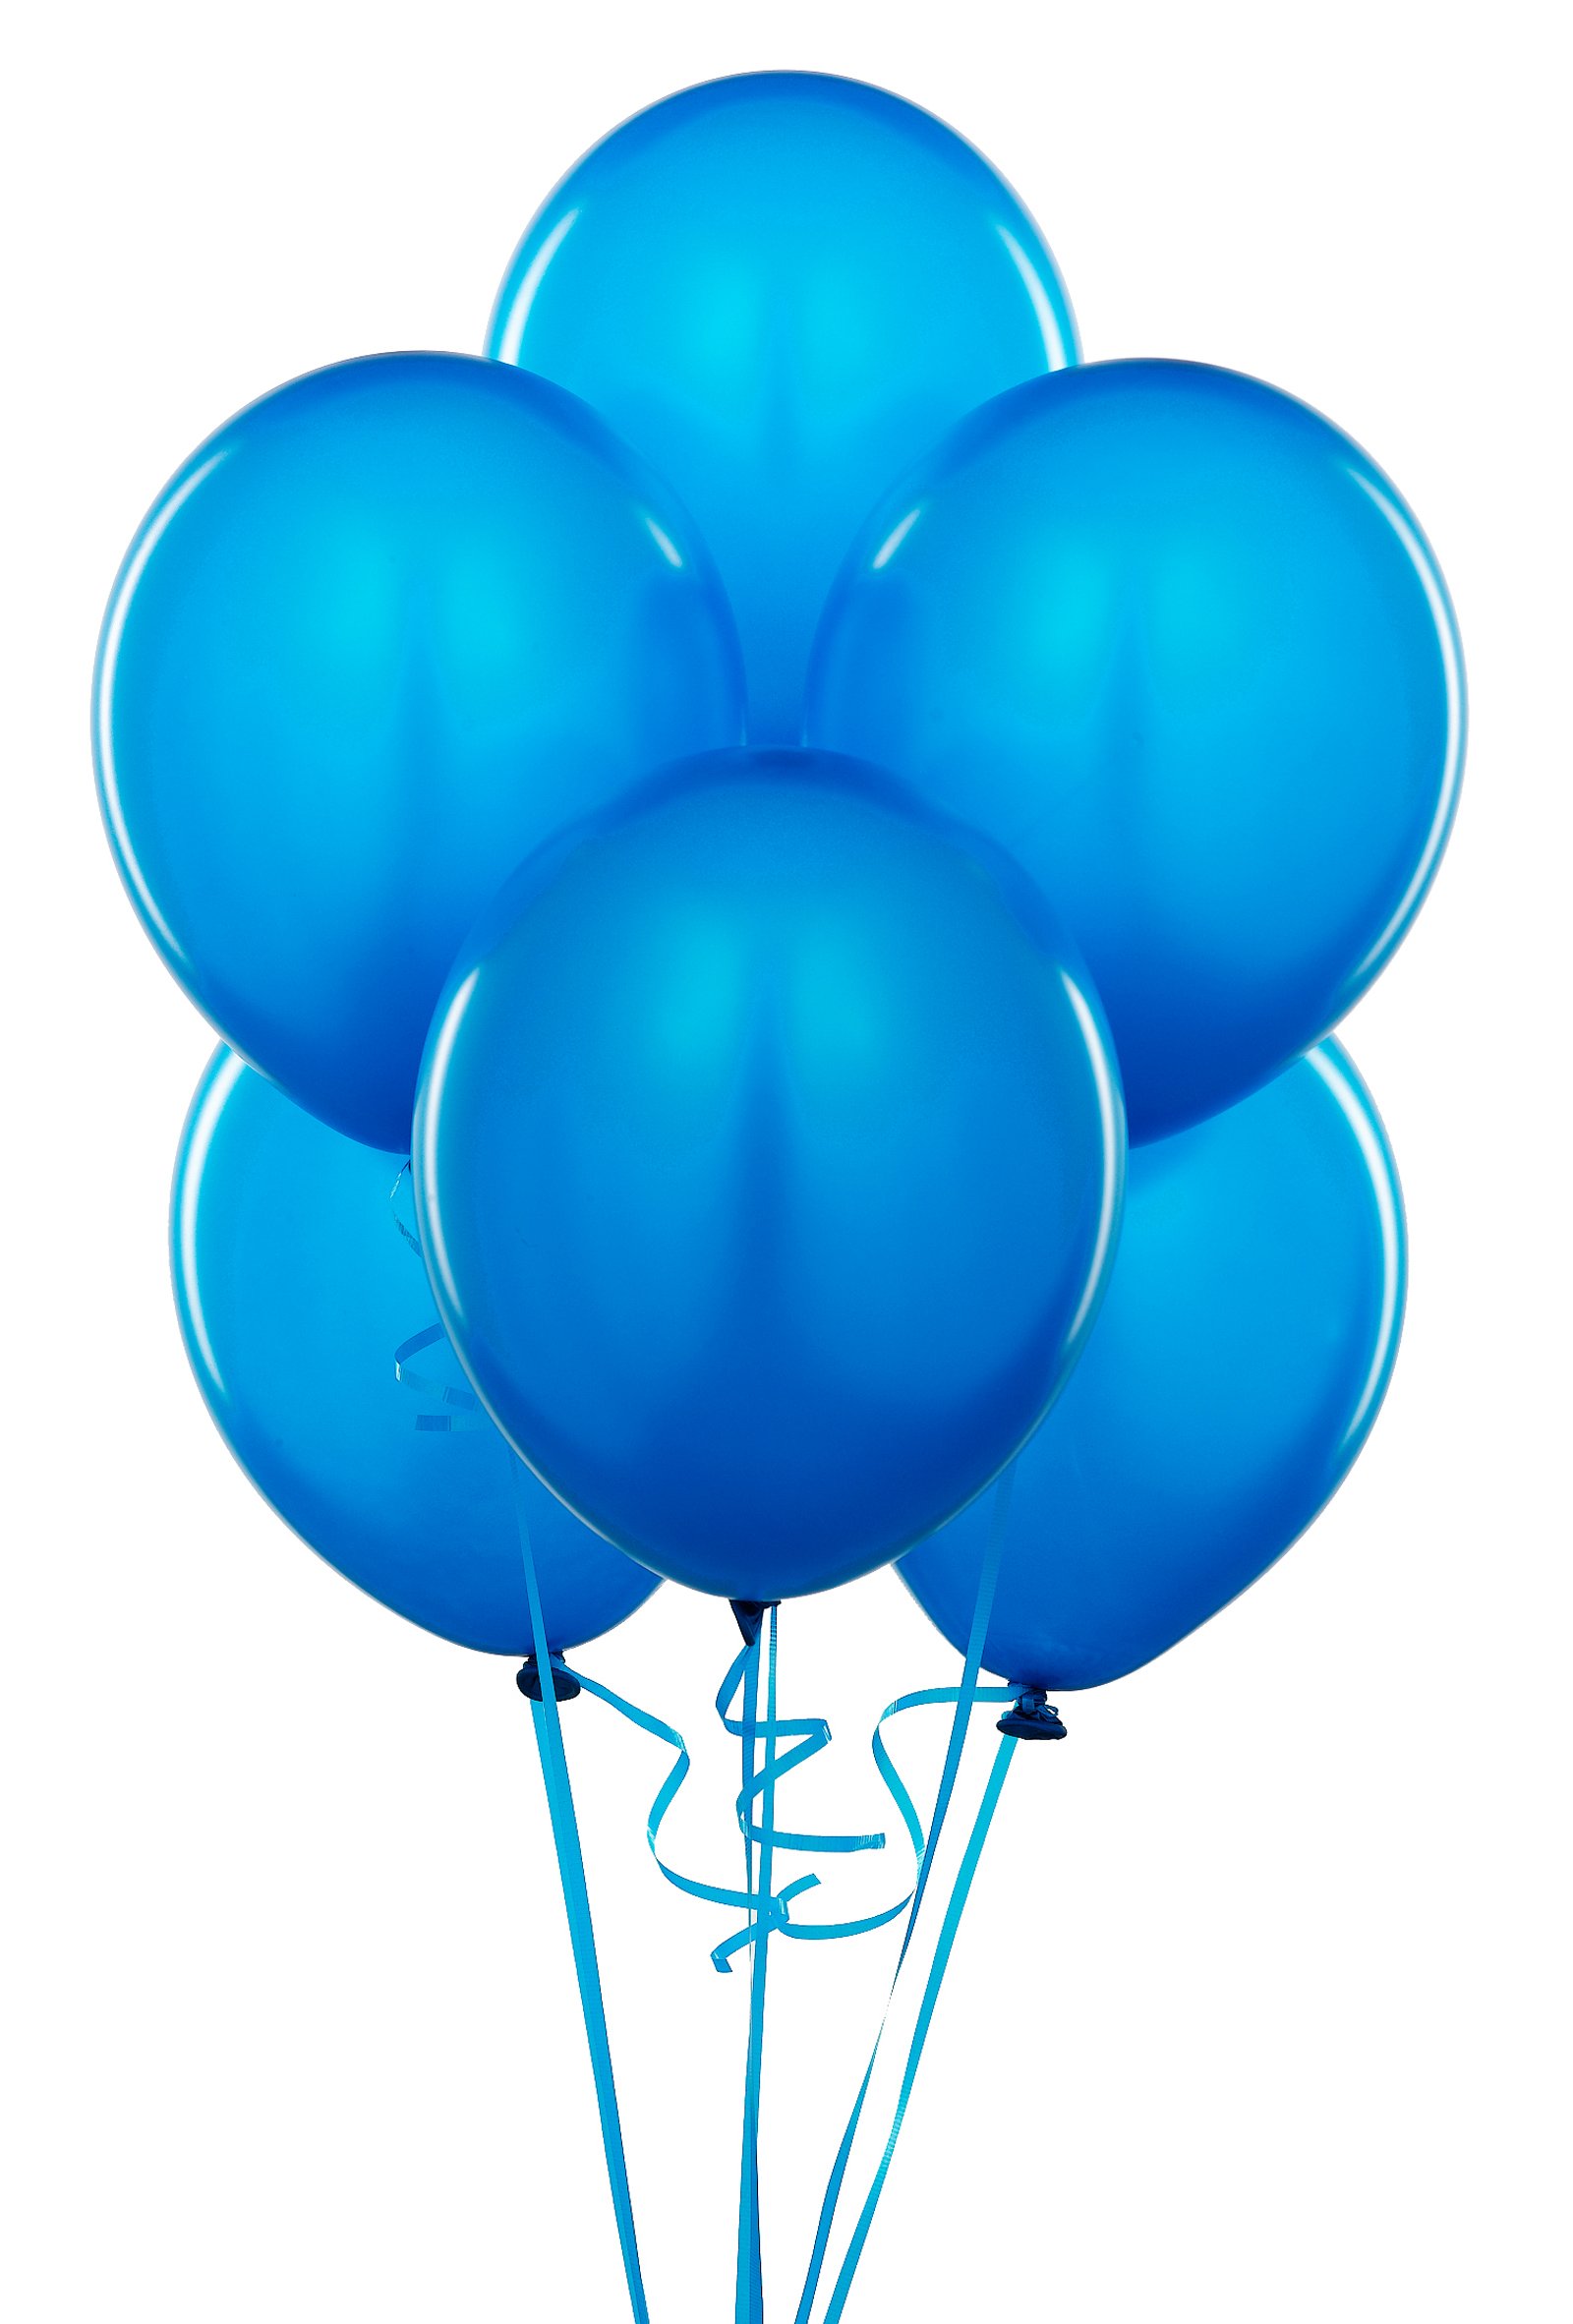 Ballon Blue - ClipArt Best